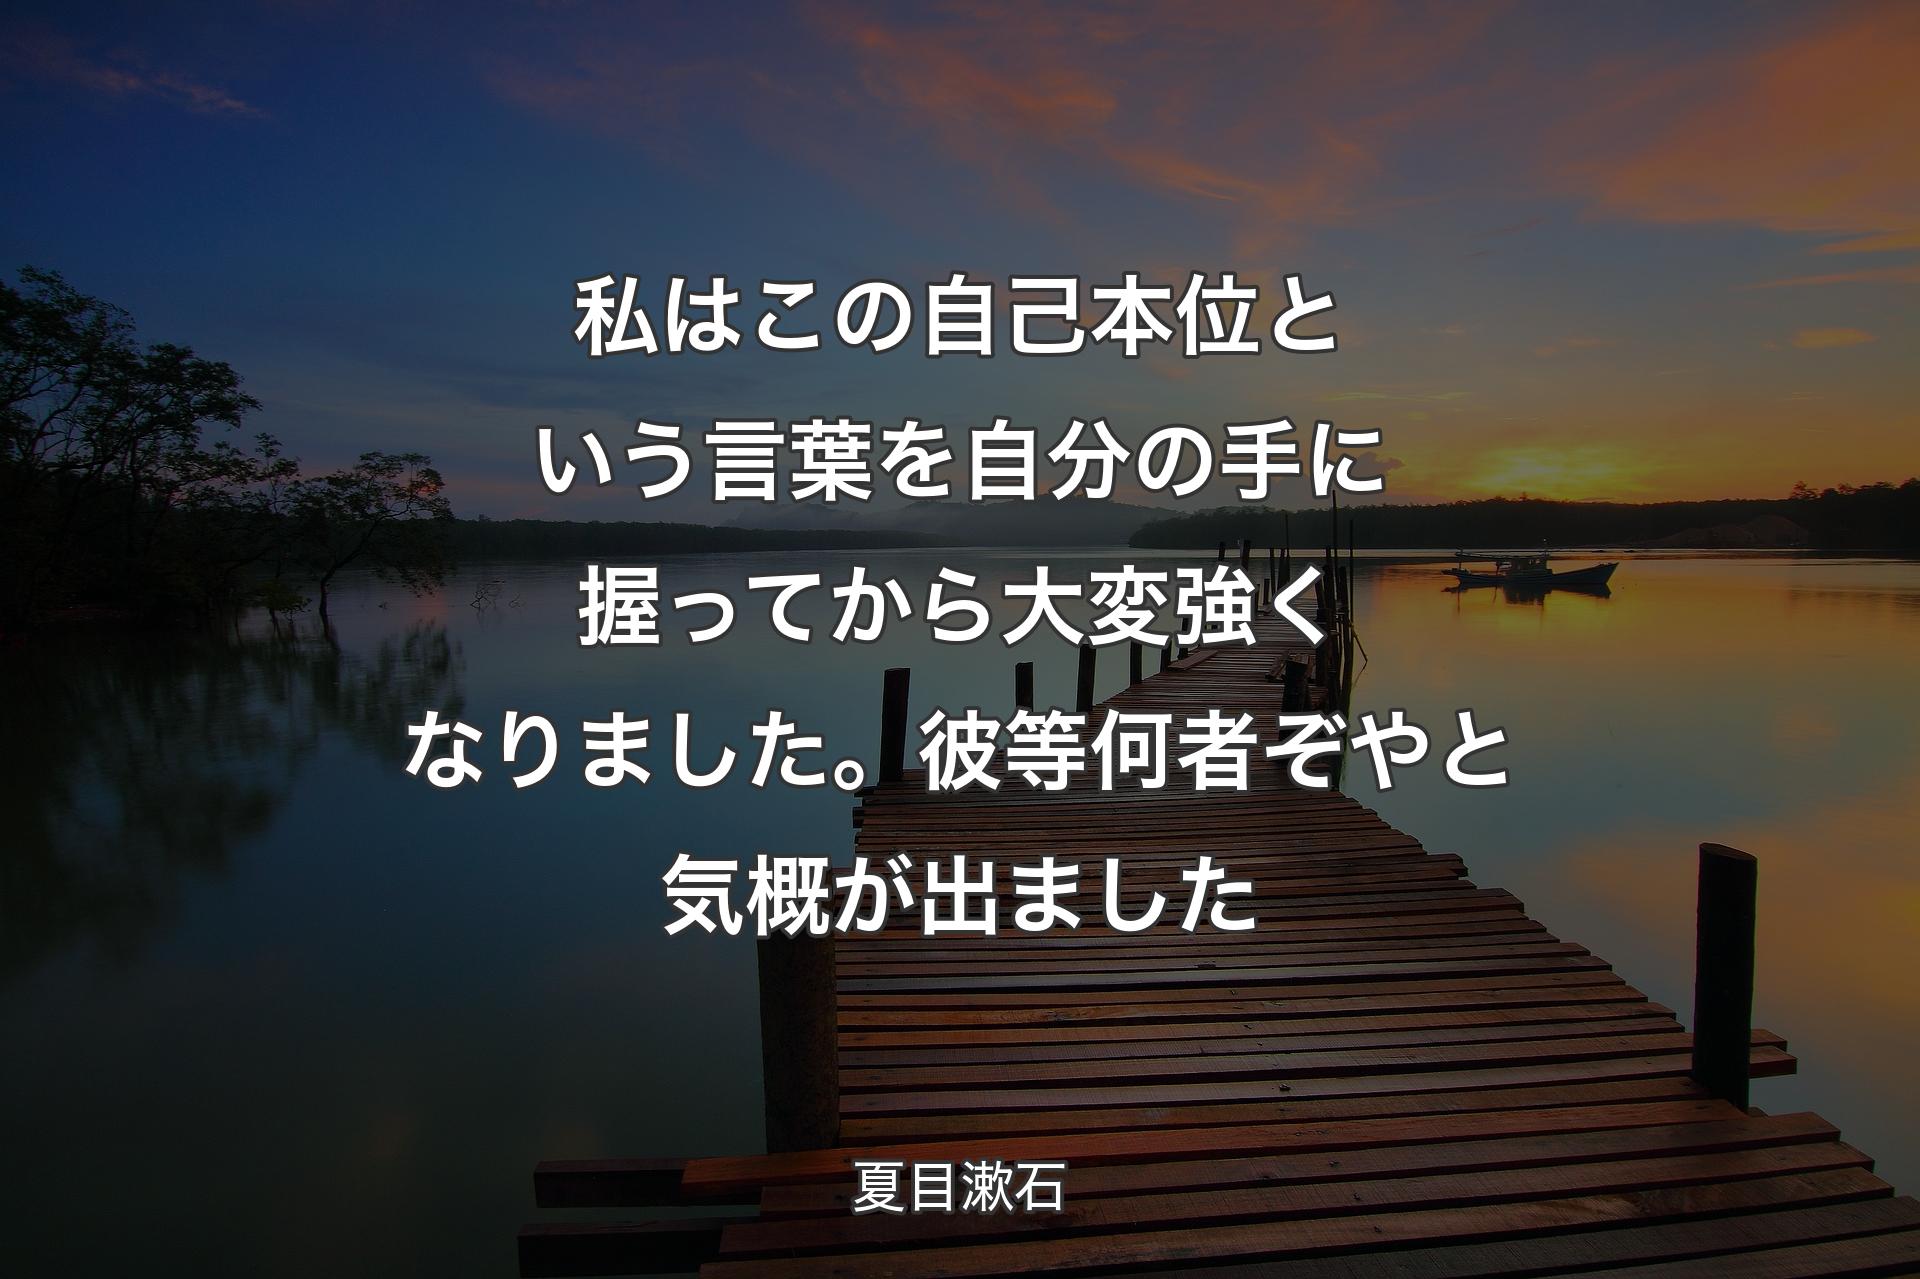 私はこの自己本位という言葉を自分の手に握ってから大変強くなりました。彼等何者ぞやと気概が出ました - 夏目漱石